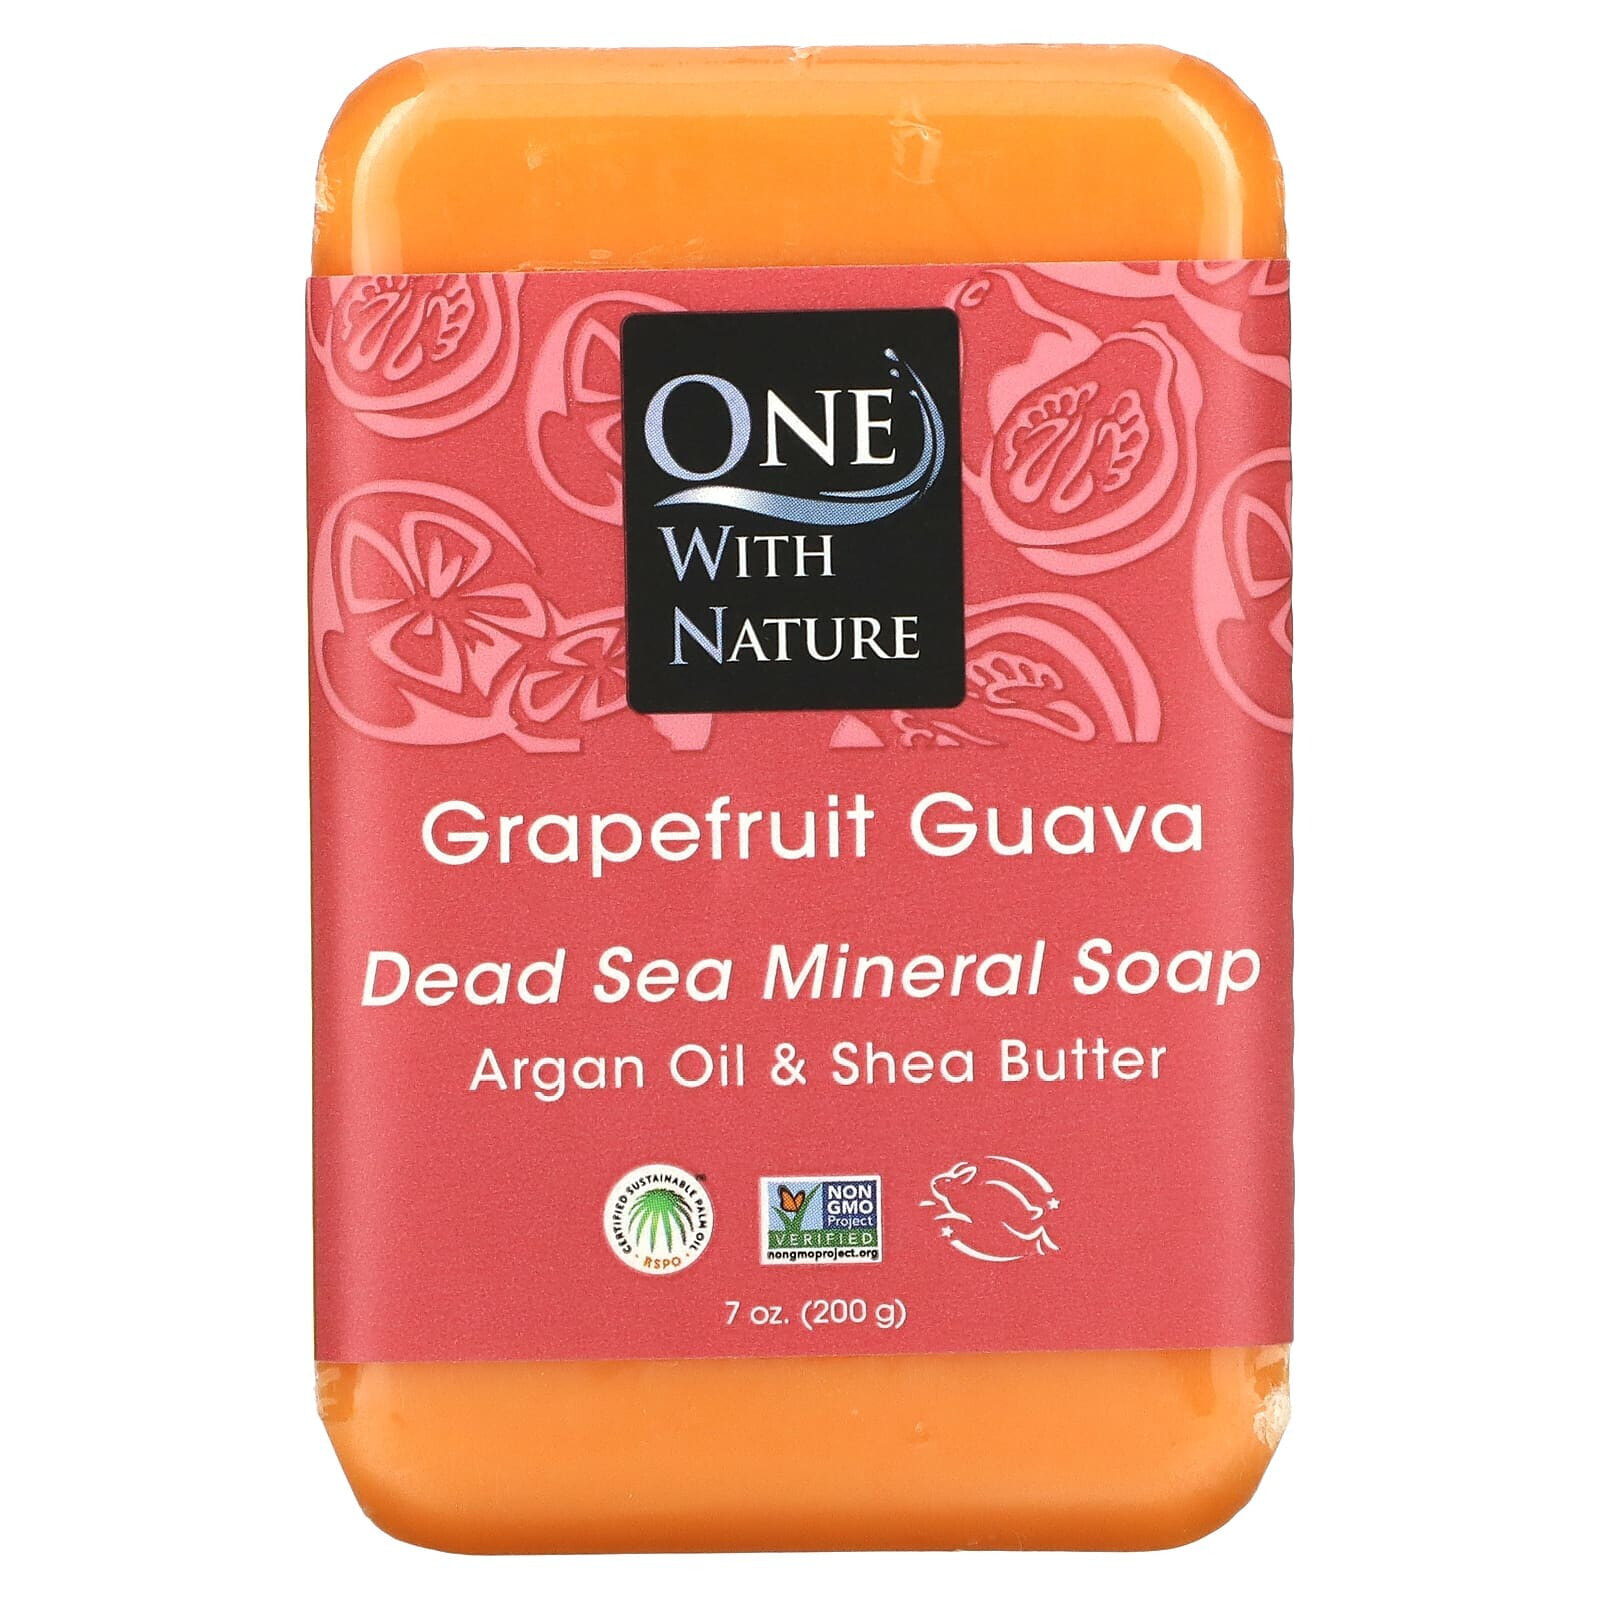 Dead Sea Mineral Soap Bar, Grapefruit Guava, 7 oz (200 g)